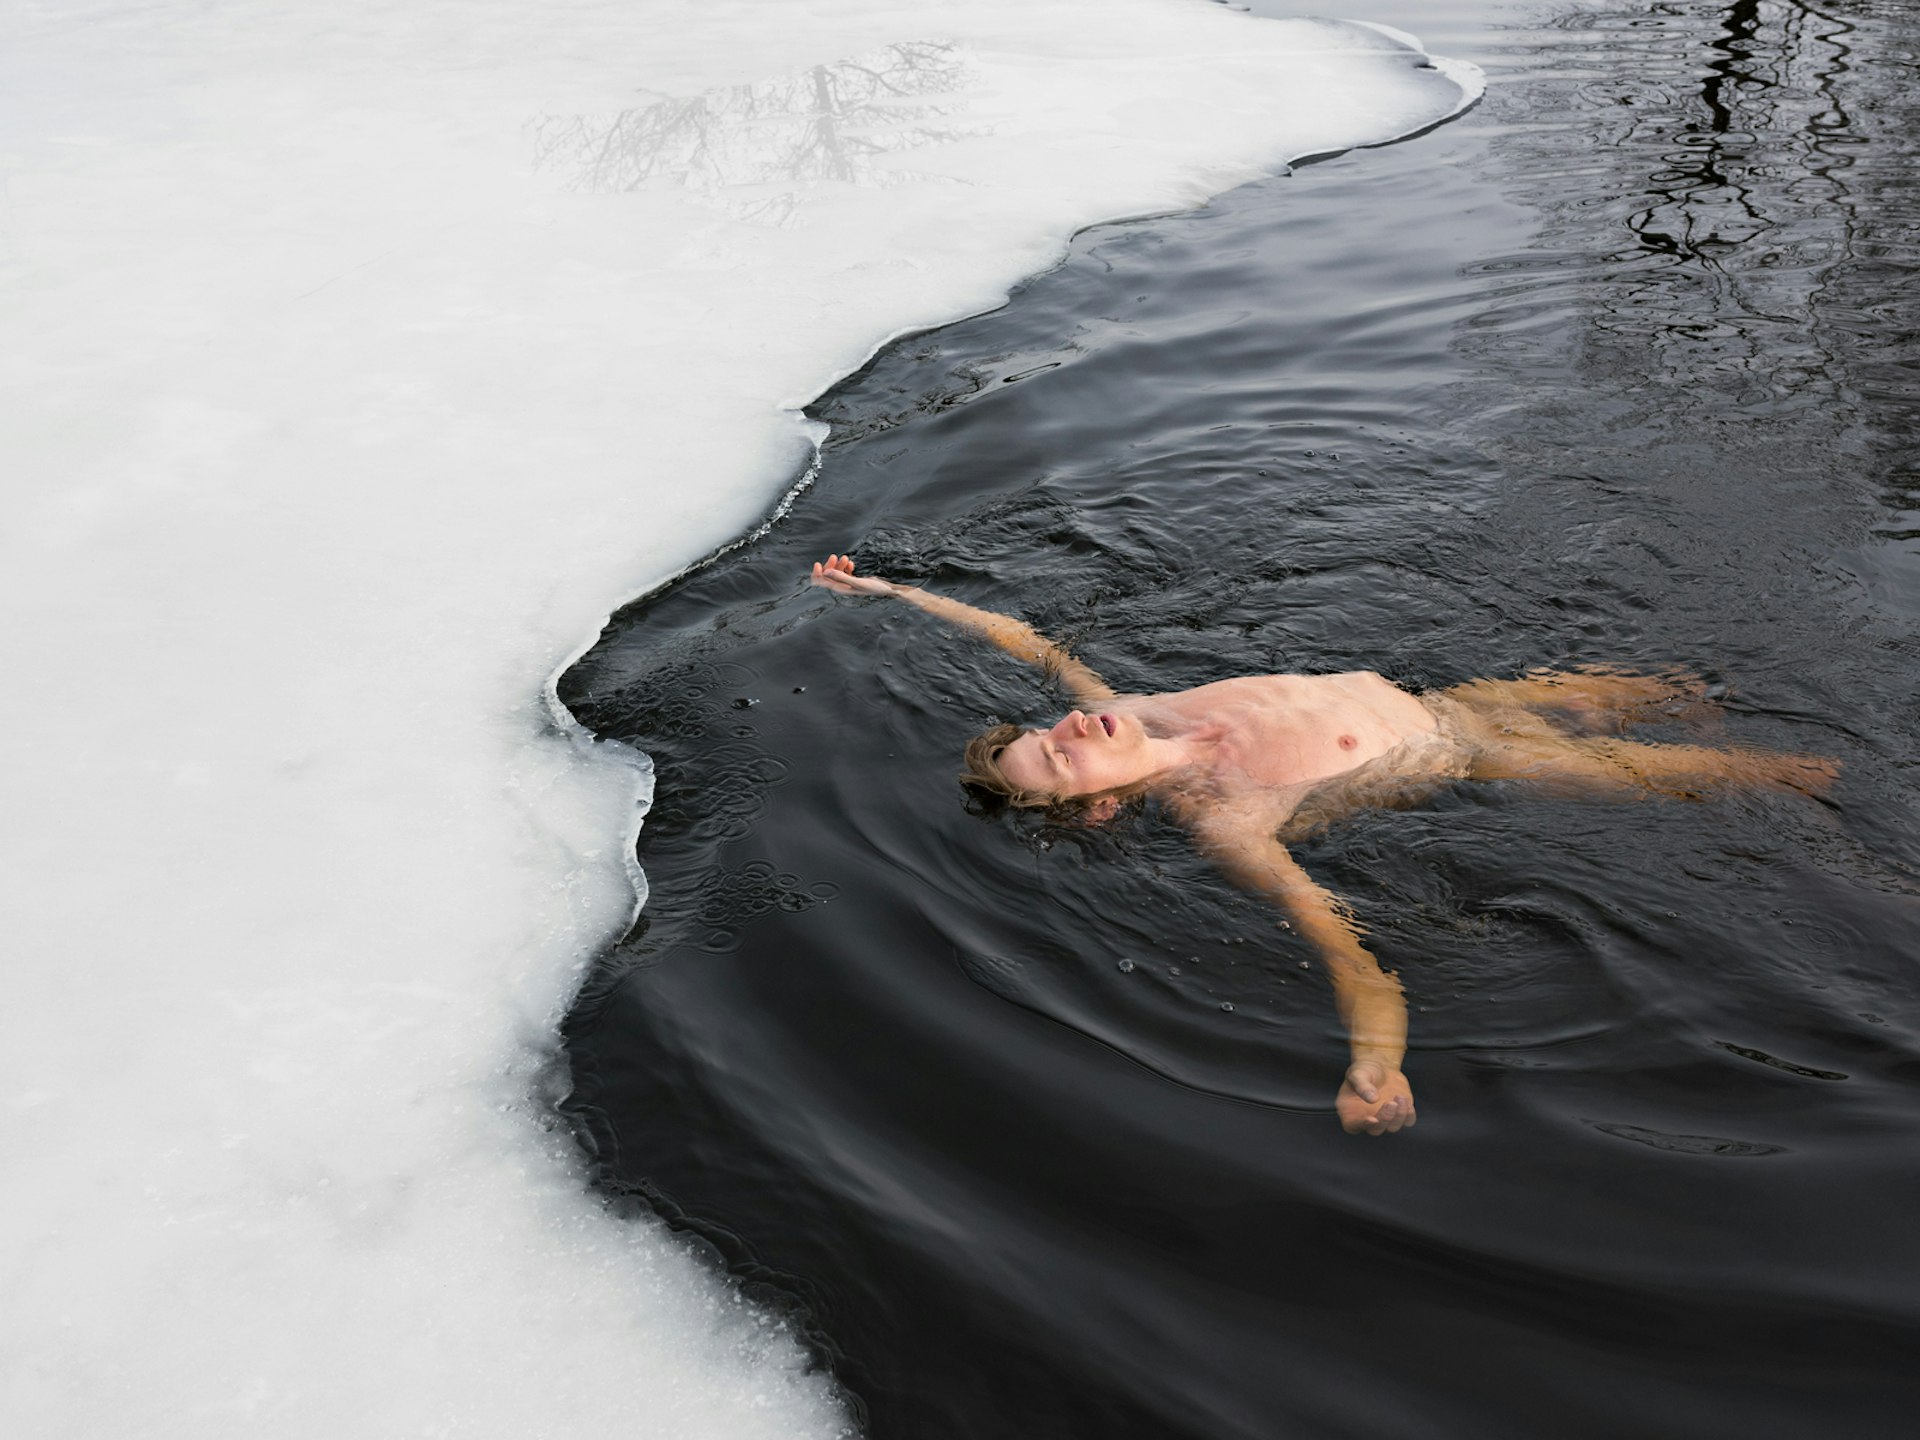 Josh winter bathing, Sweden. © Lucas Foglia, courtesy of Michael Hoppen Gallery, London.